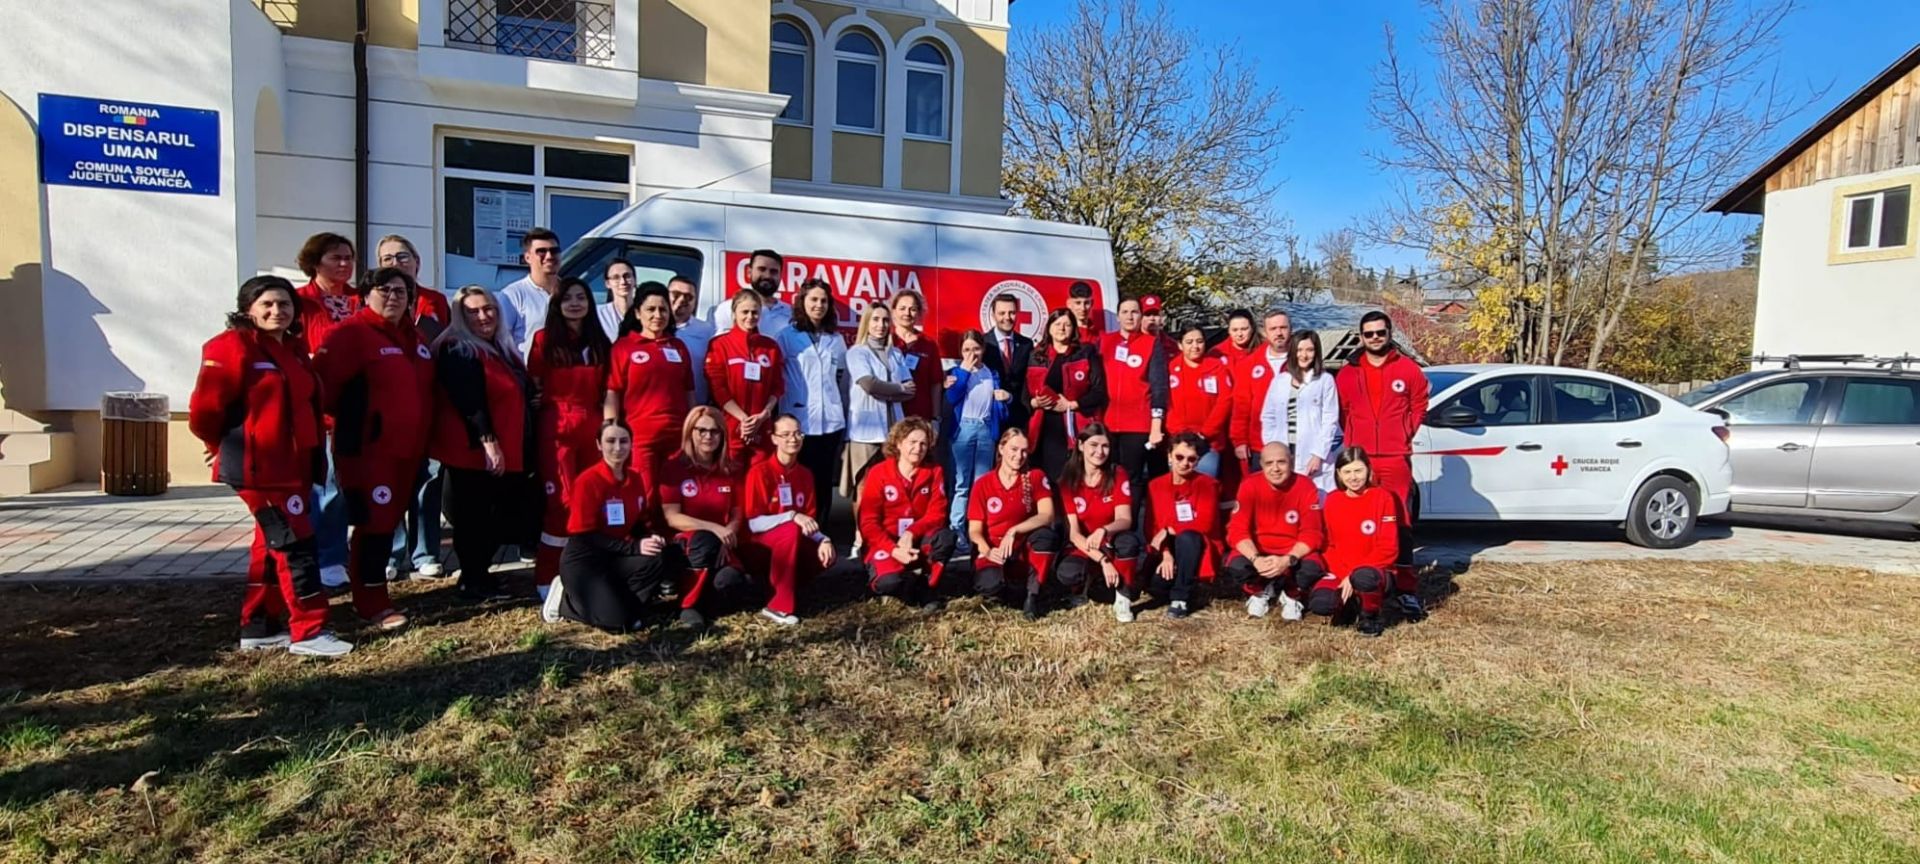 500 de consultații gratuite în cadrul Caravanei de Bine a Crucii Roșii Române